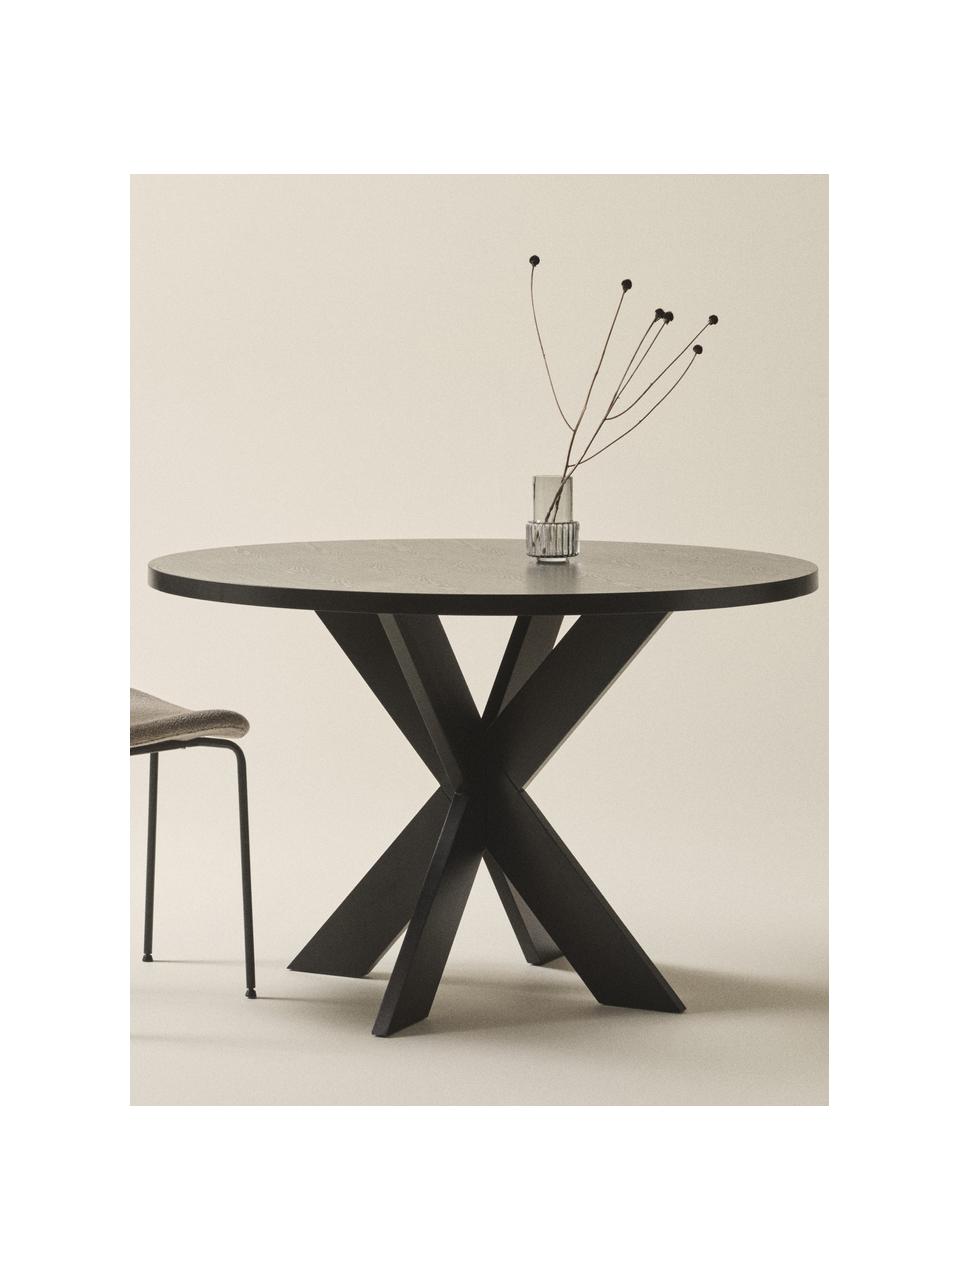 Kulatý dřevěný jídelní stůl Lugnvik, MDF deska (dřevovláknitá deska střední hustoty) potažená linoleem, Černá, Ø 120 cm, V 76 cm